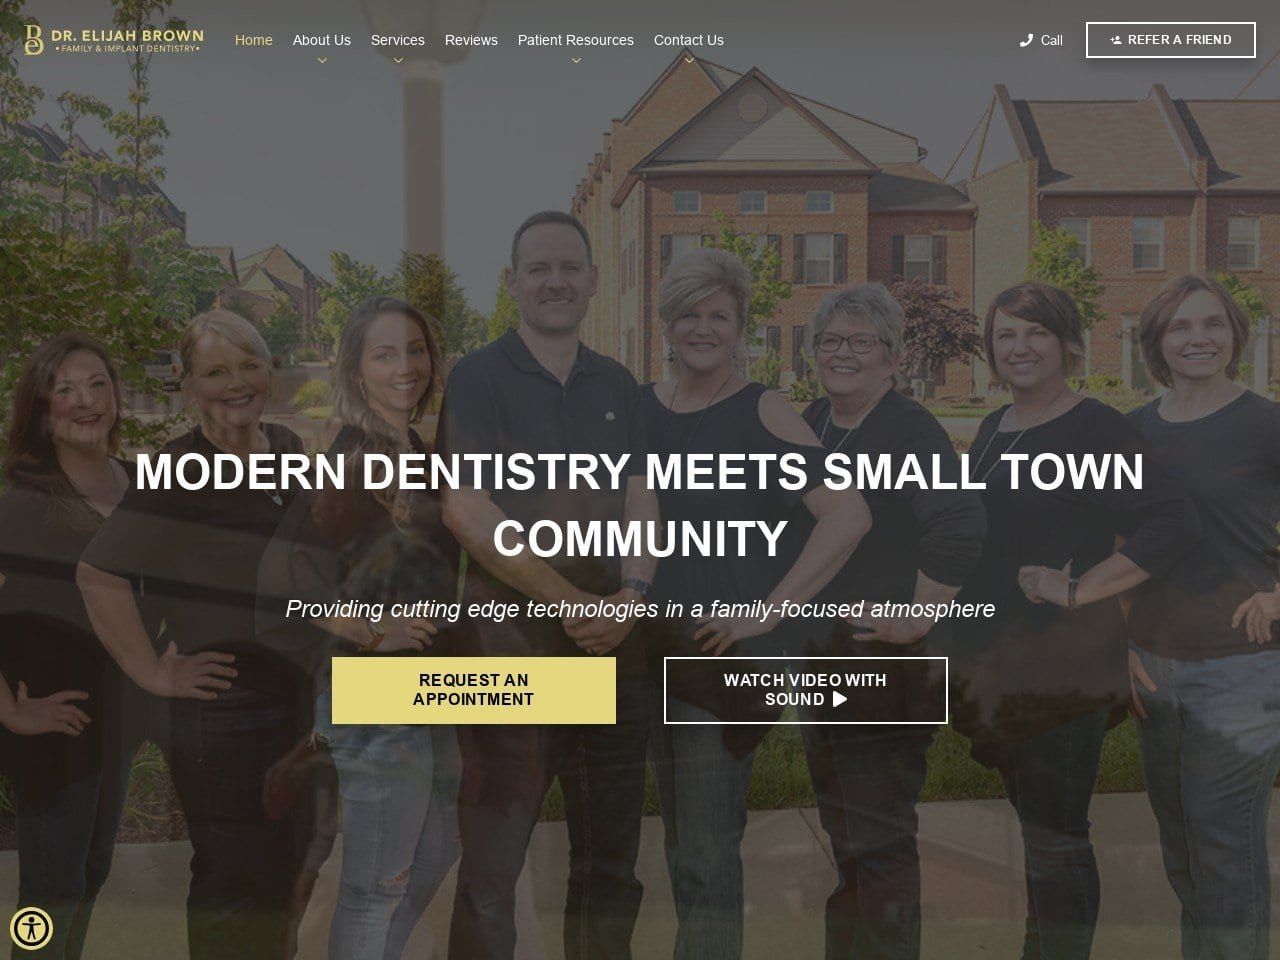 Dr. Elijah Brown Family Dental Care Website Screenshot from mtjulietdental.com